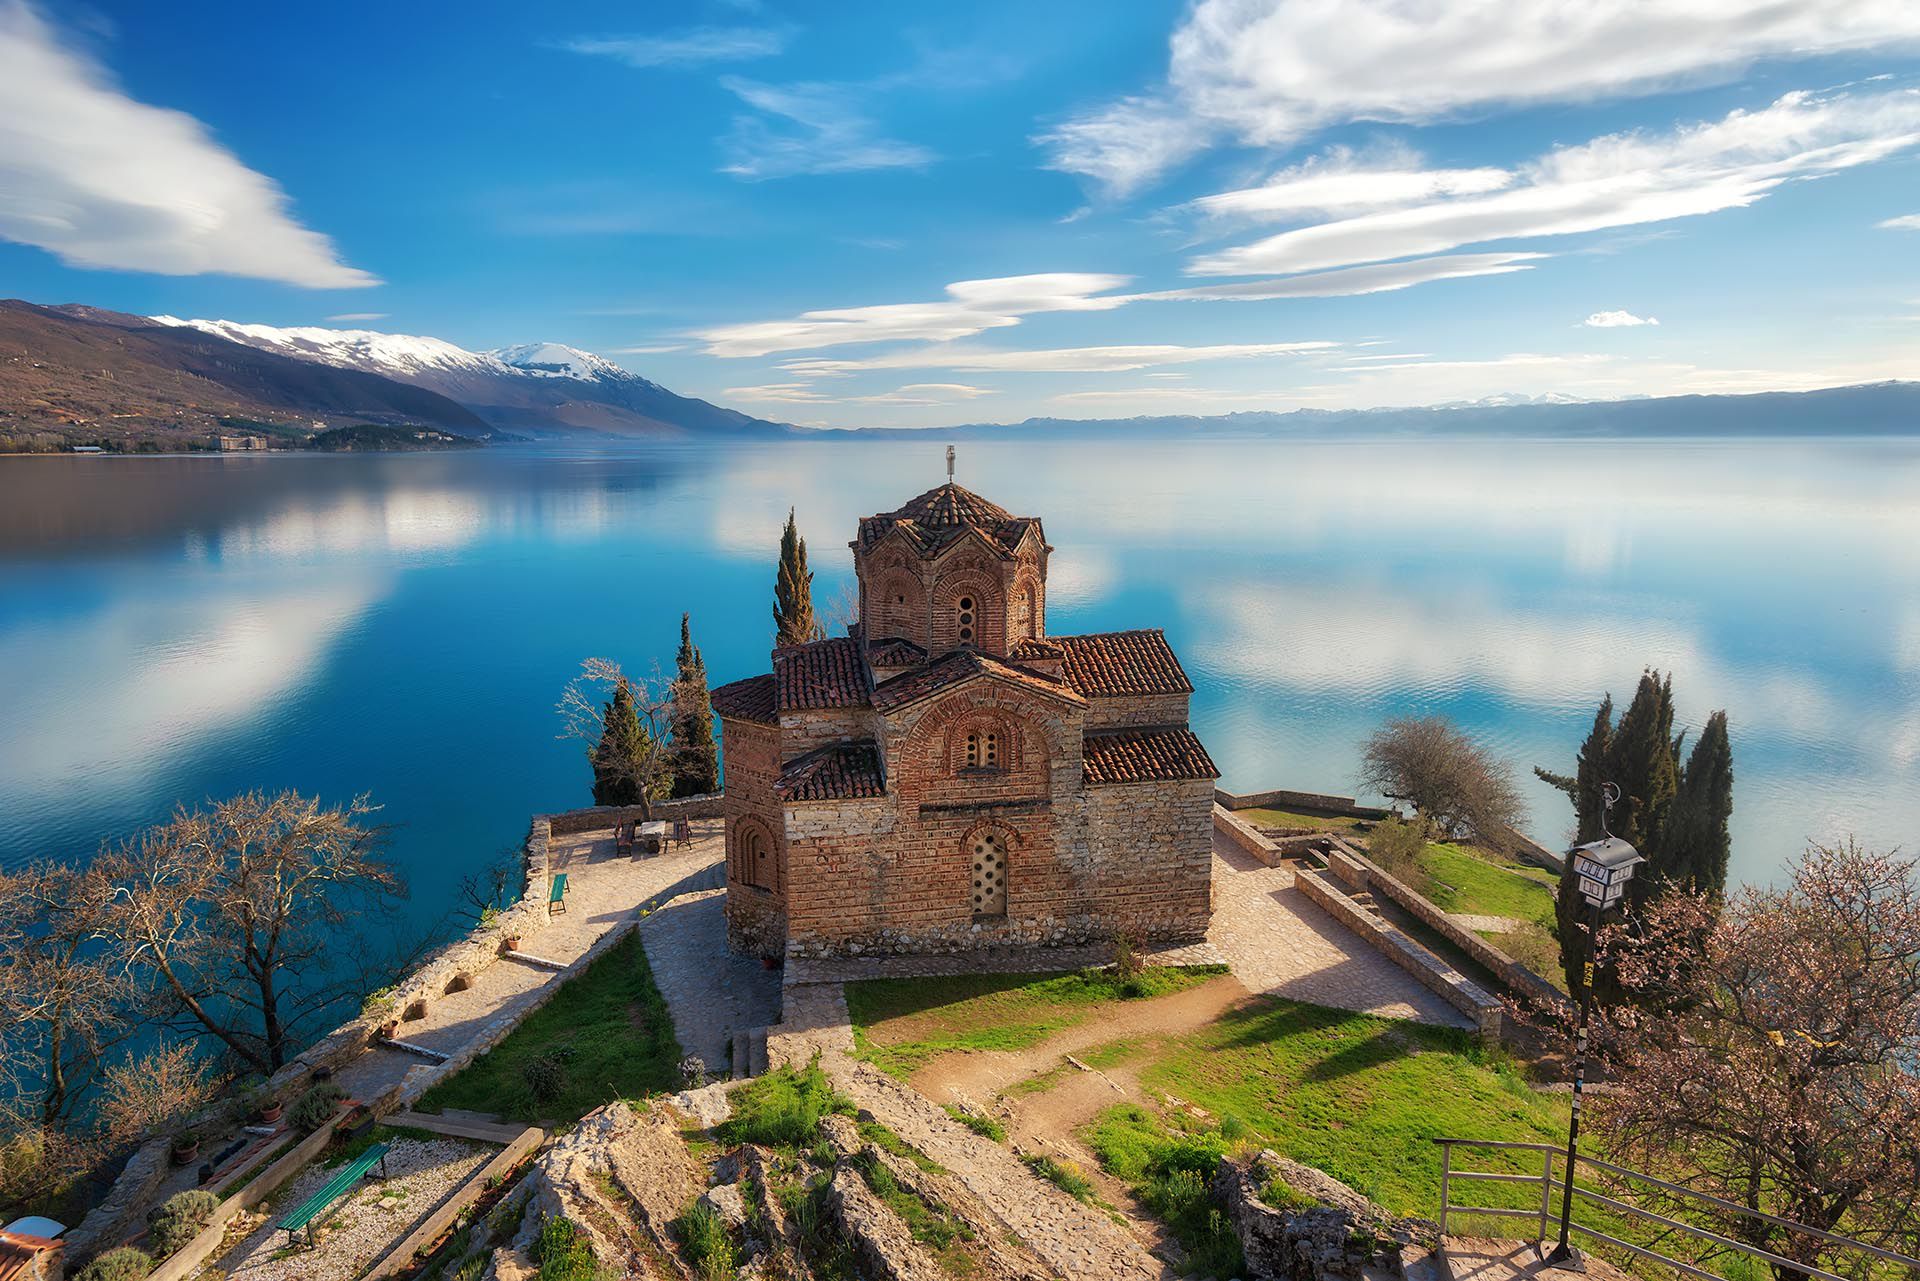 En el 2020 los entusiastas de la cultura y la aventura tendrán nuevas excusas para visitar Macedonia del Norte gracias a la incorporación de nuevas rutas aéreas al lago Ohrid, protegido por la Unesco, y al recién inaugurado High Scardus Trail, una ruta de 495 km que recorre los picos más espectaculares de la región